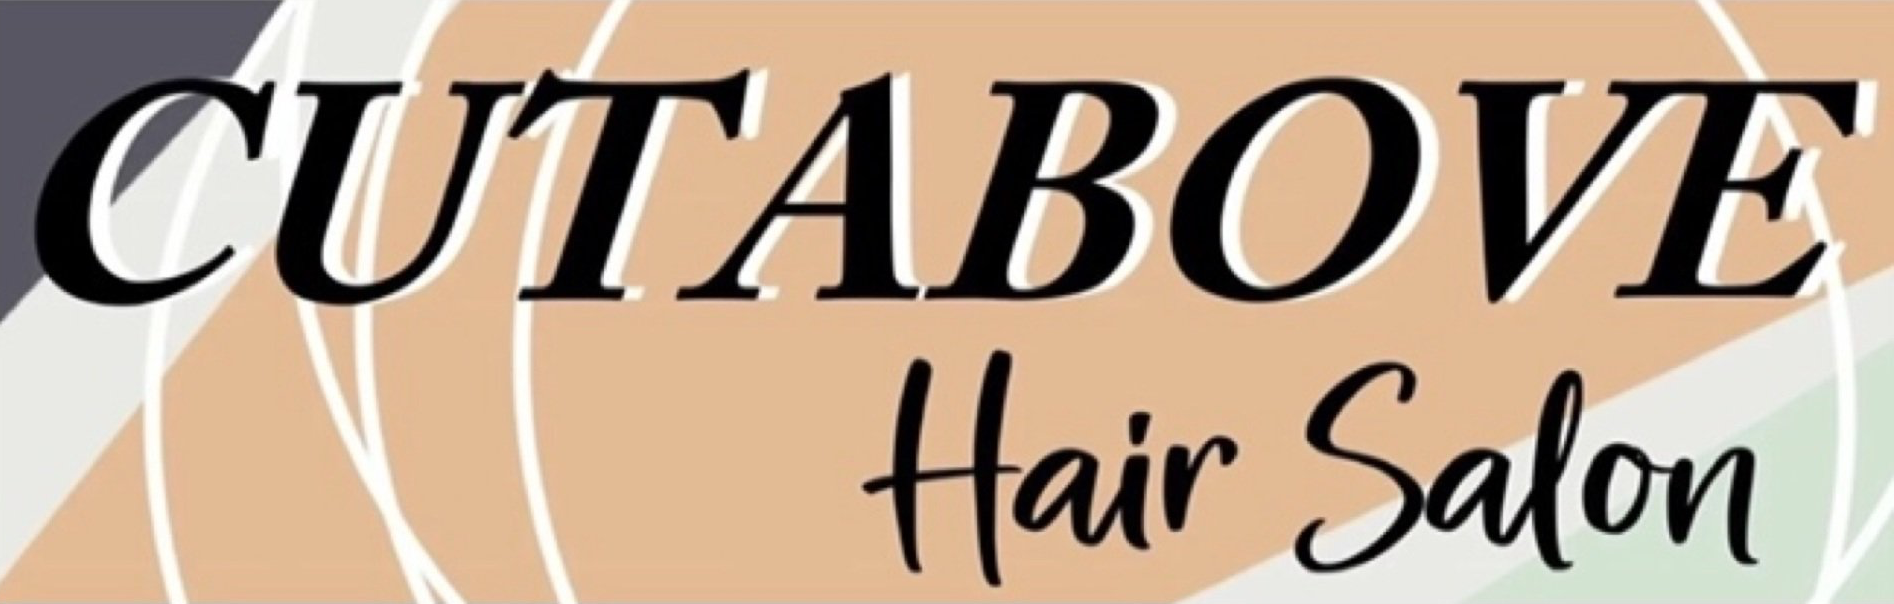 Cutabove Hair Salon logo